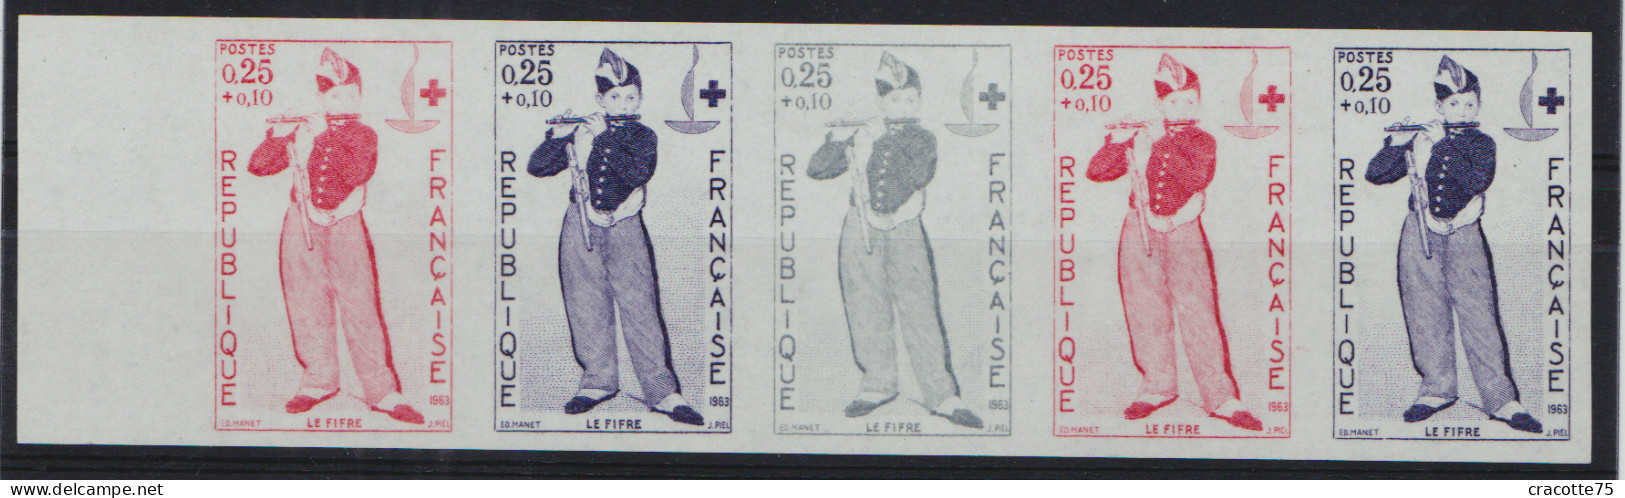 FRANCE - N°1323/1324. Croix-Rouge 1963. Le Fifre De Manet. Bande De 5. Luxe. - Musique